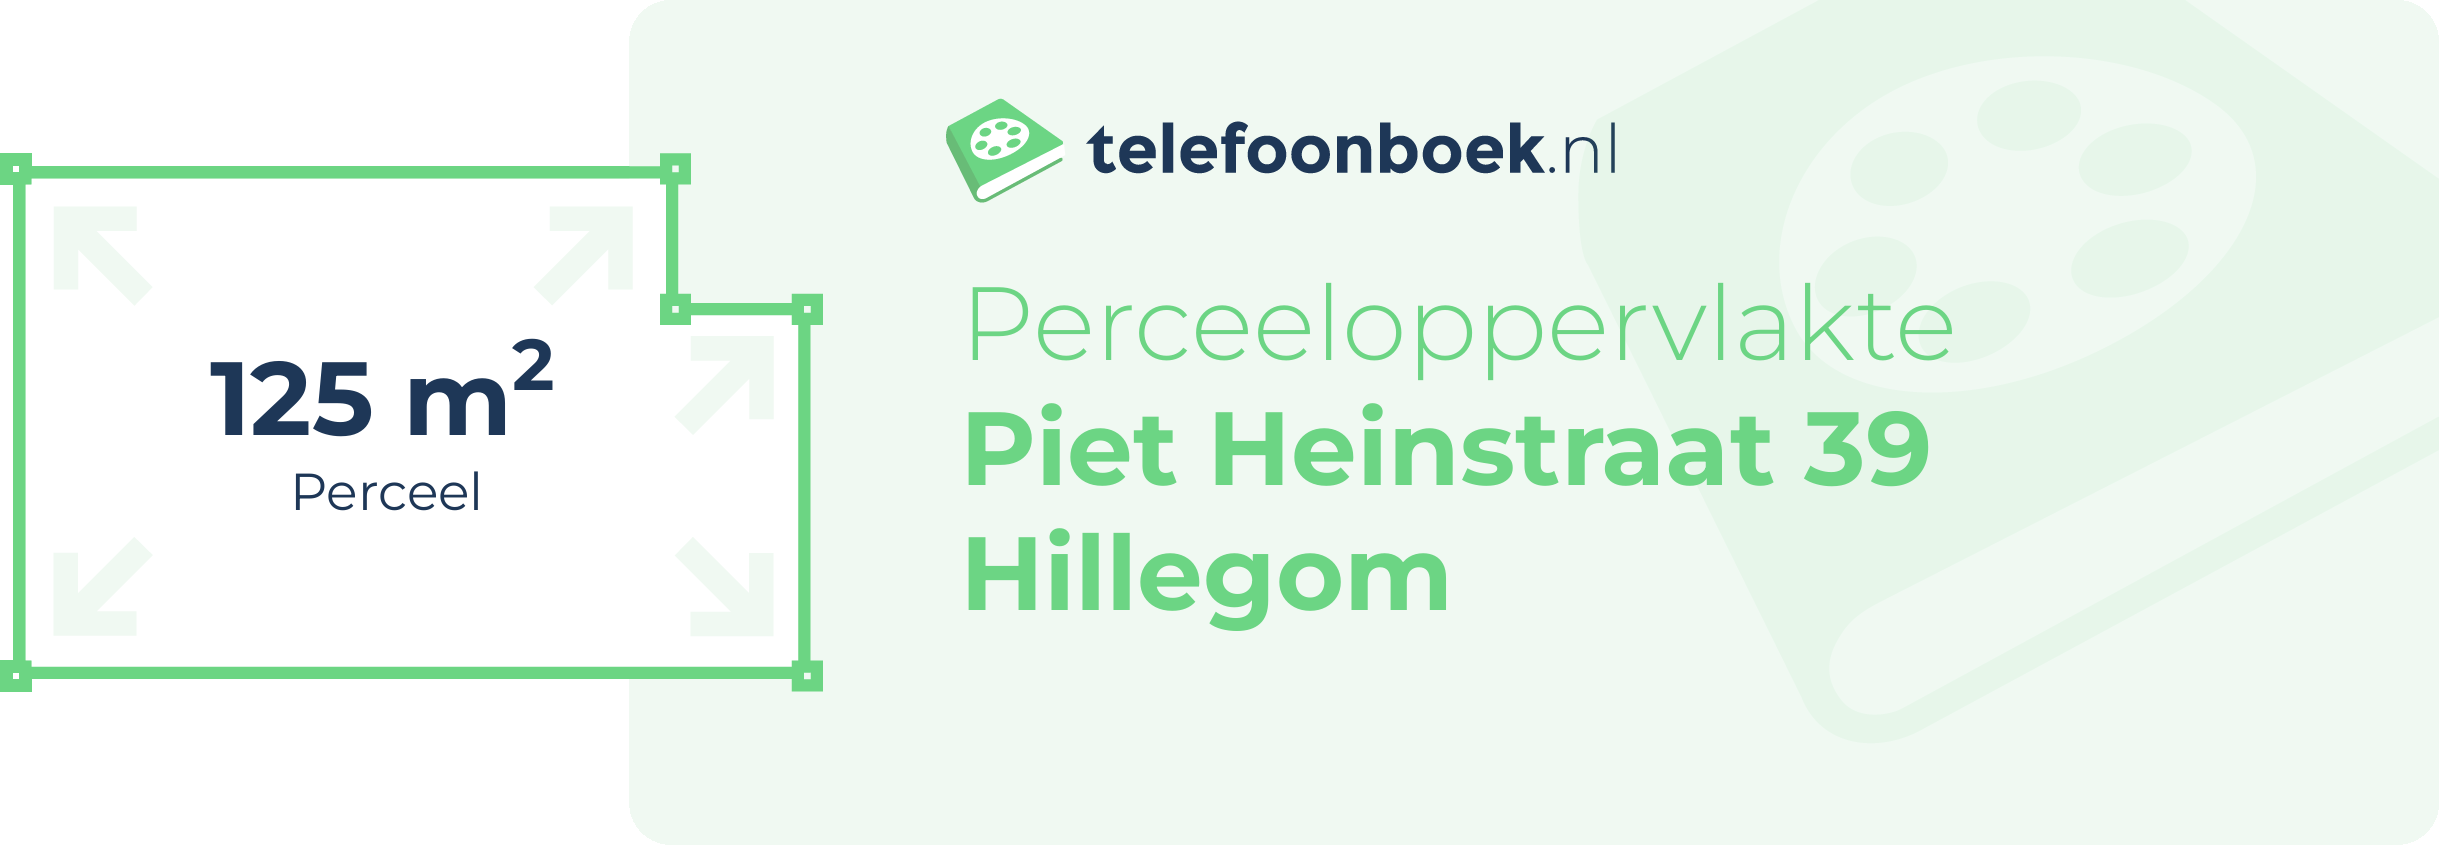 Perceeloppervlakte Piet Heinstraat 39 Hillegom